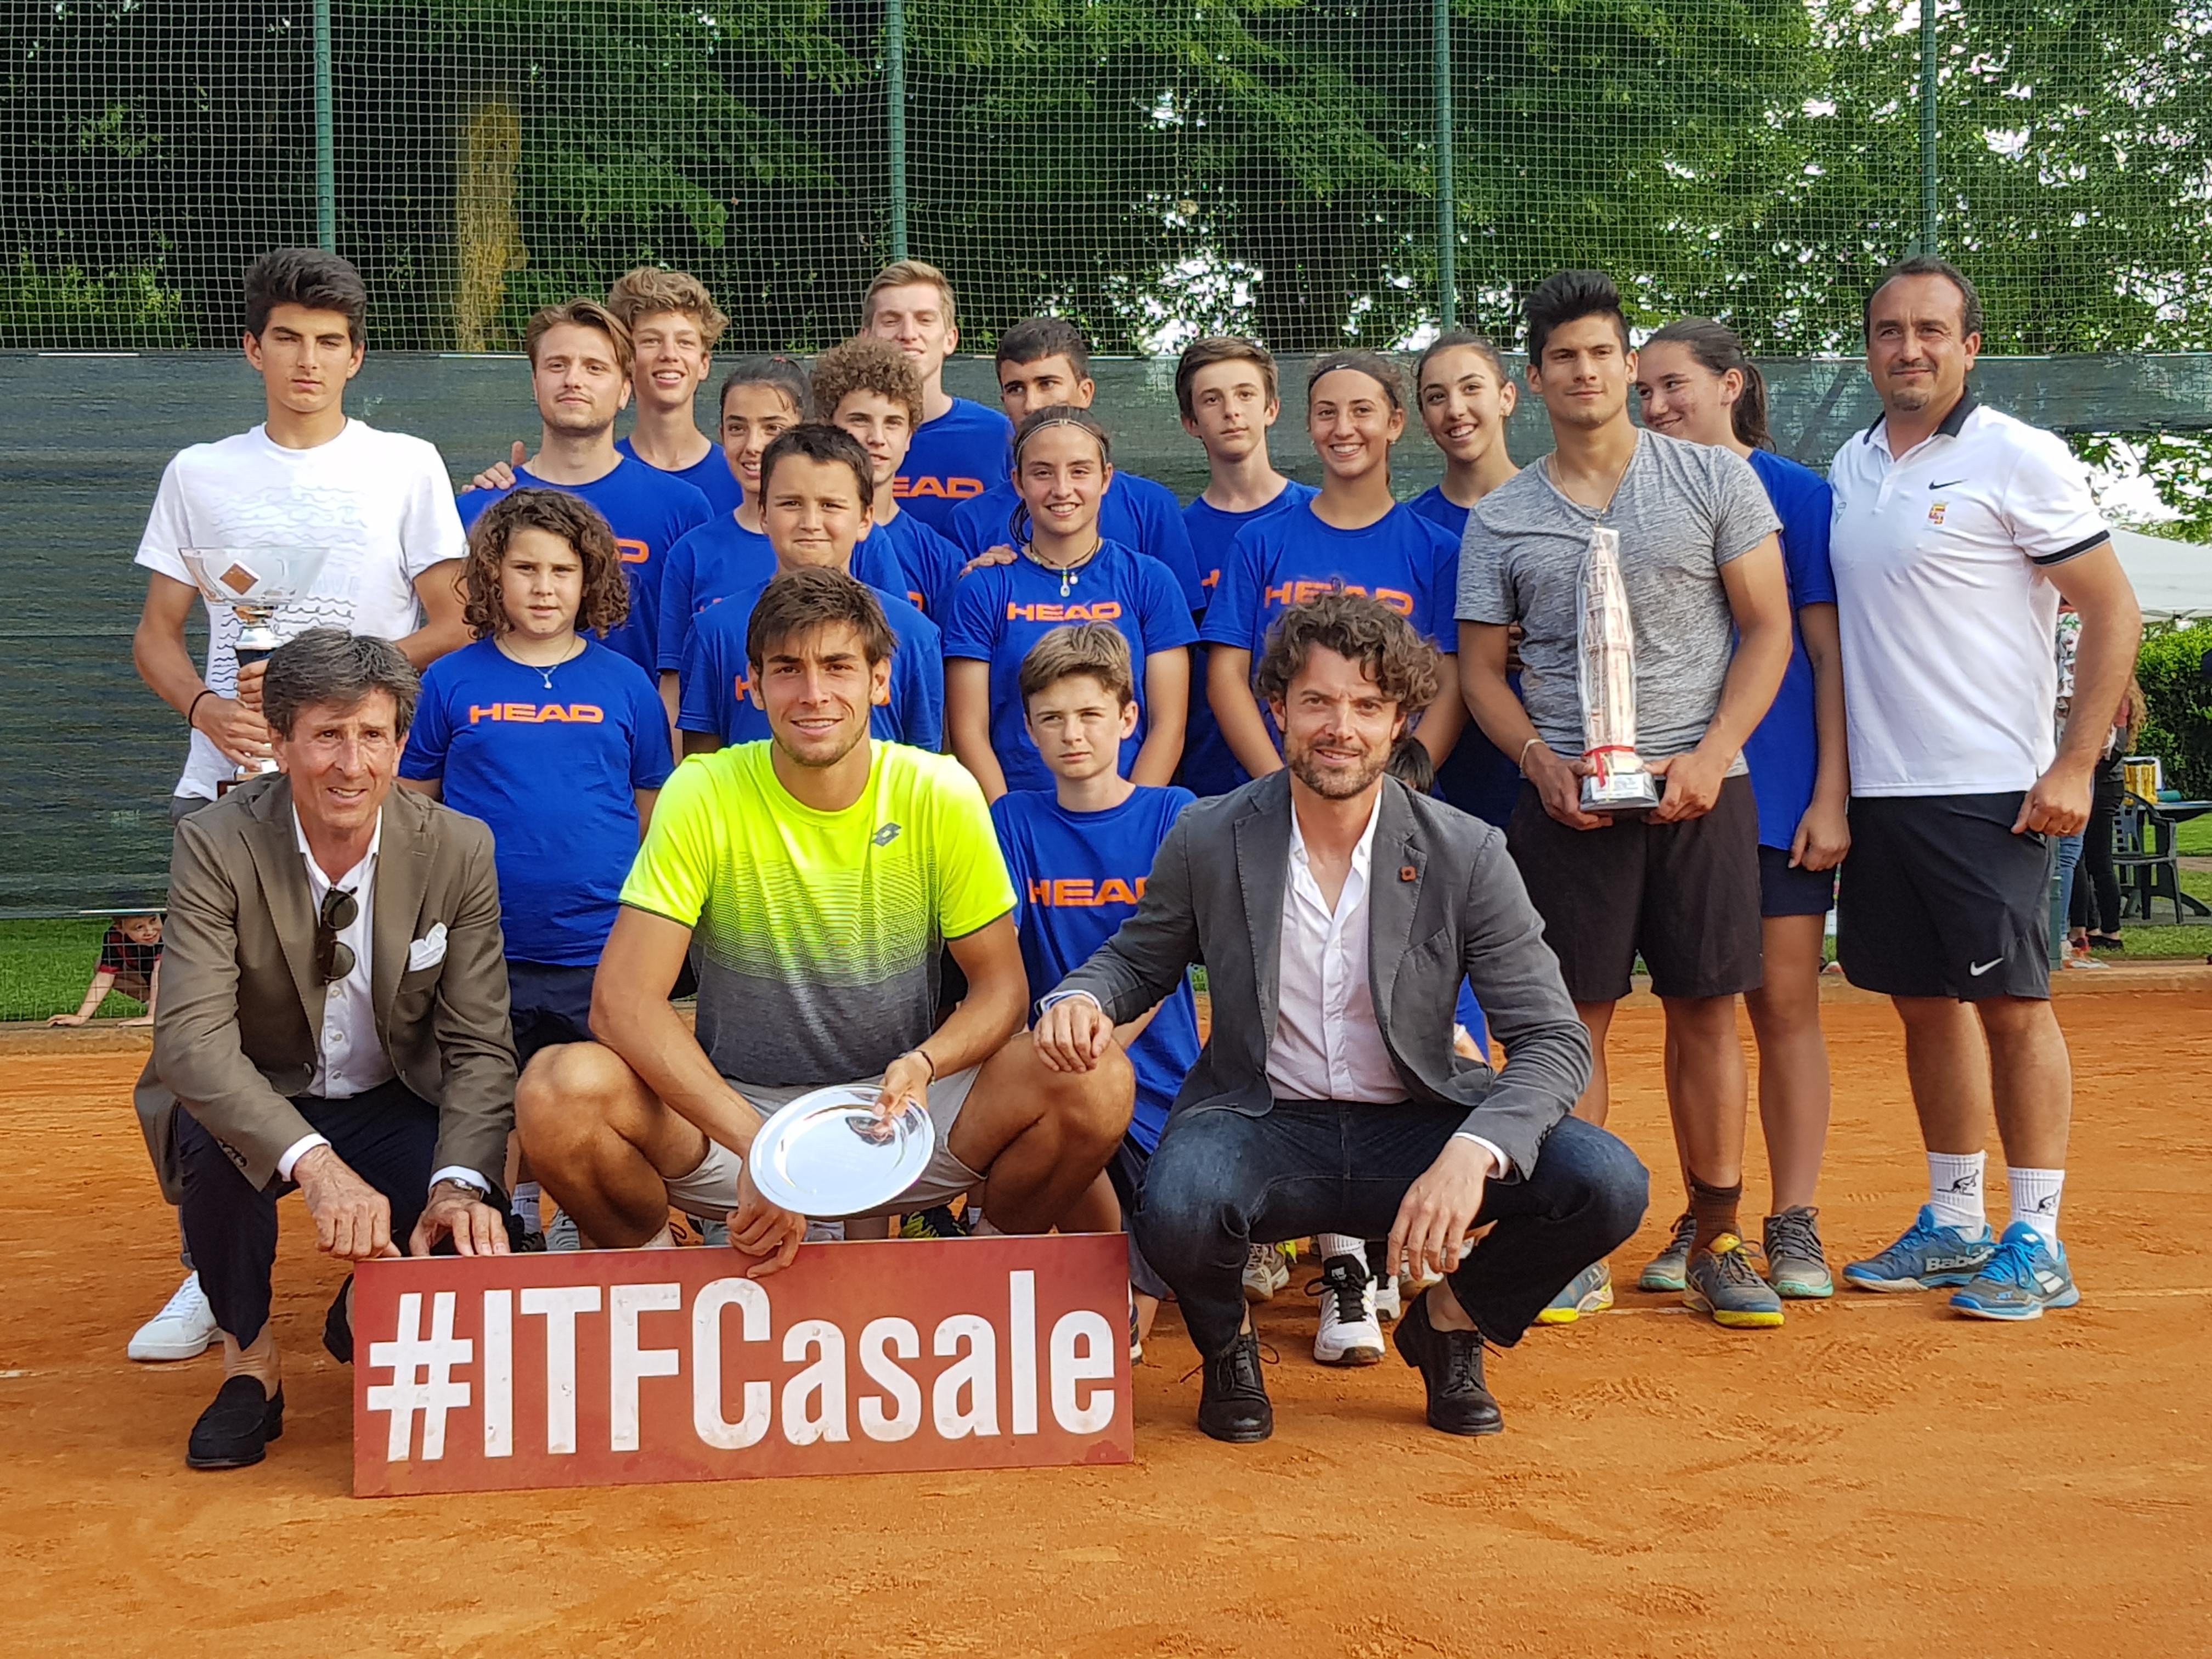 Tennis: a Casale trionfa Bastian Malla. Dalla Valle ko al terzo set